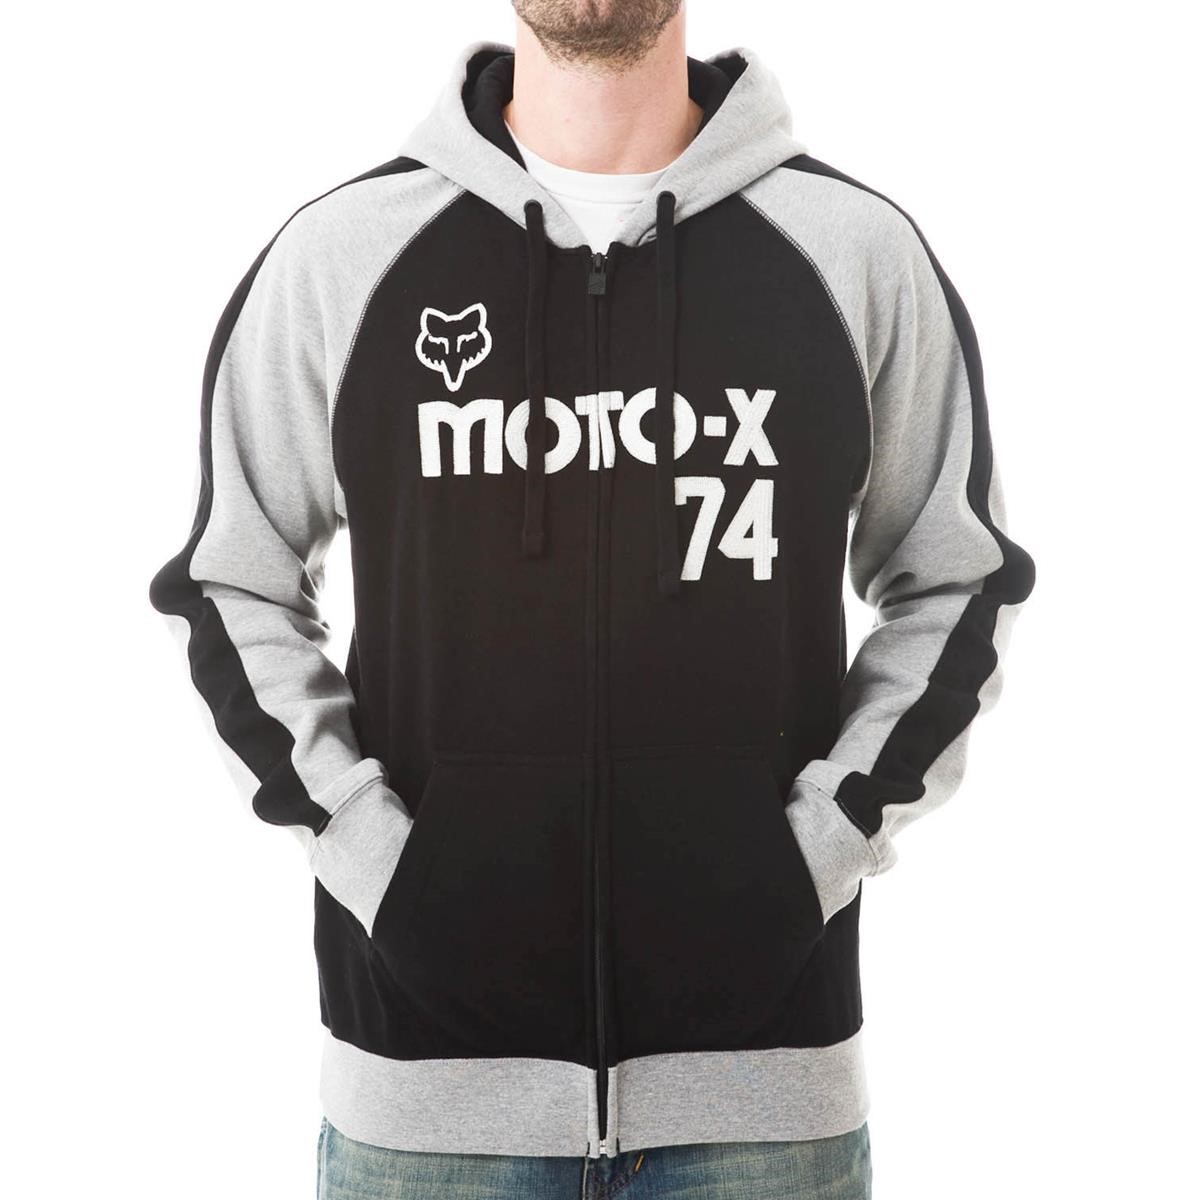 Freizeit/Streetwear Bekleidung-Hoodies - Fox Zip Hoody Moto-X Classic Combo Black